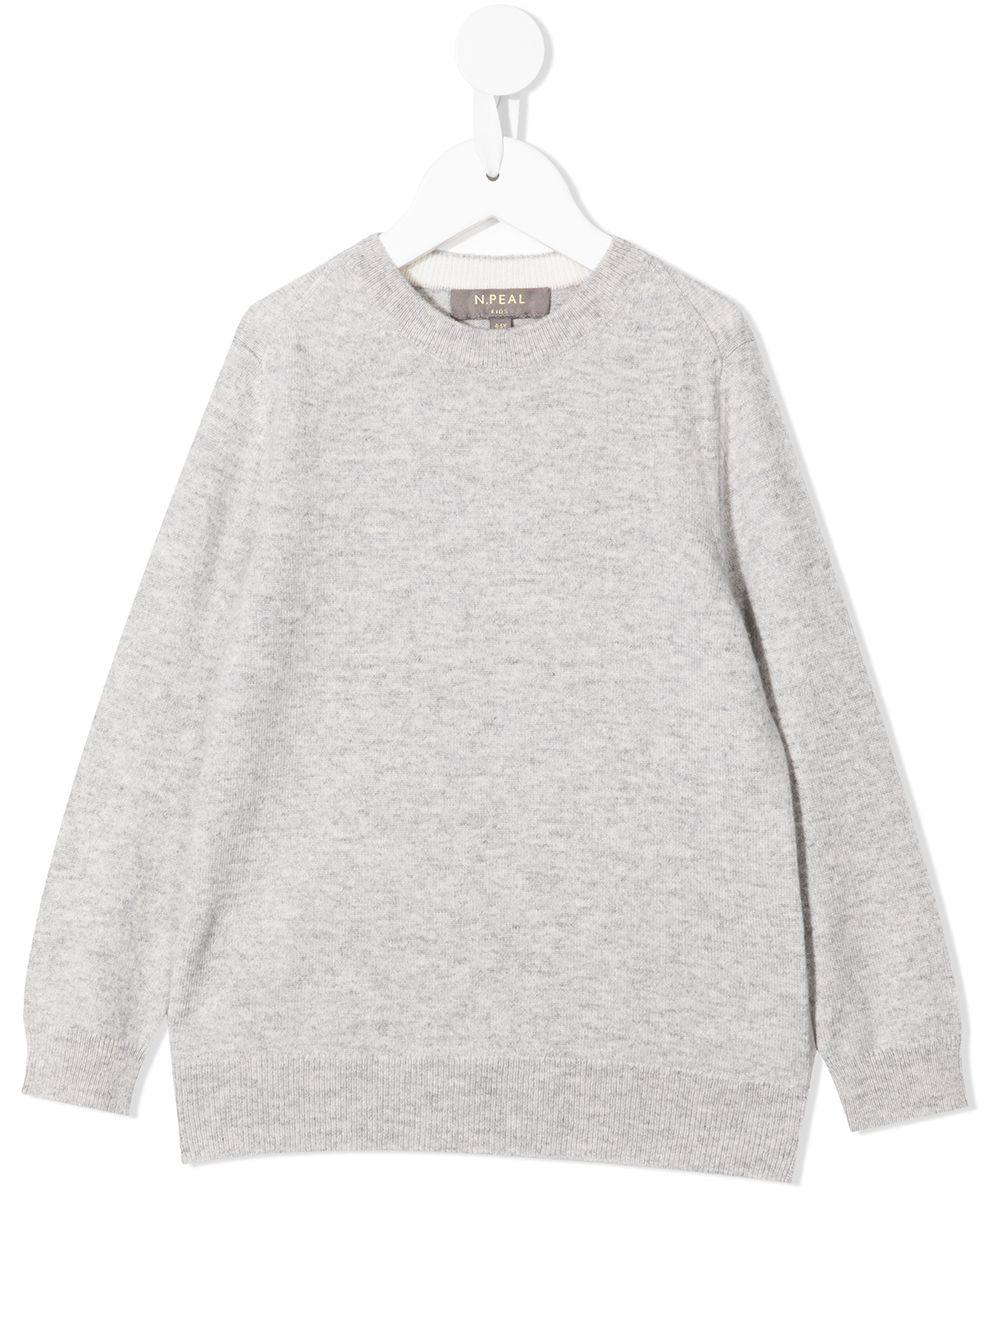 N.PEAL KIDS organic cashmere sweatshirt - Grey von N.PEAL KIDS